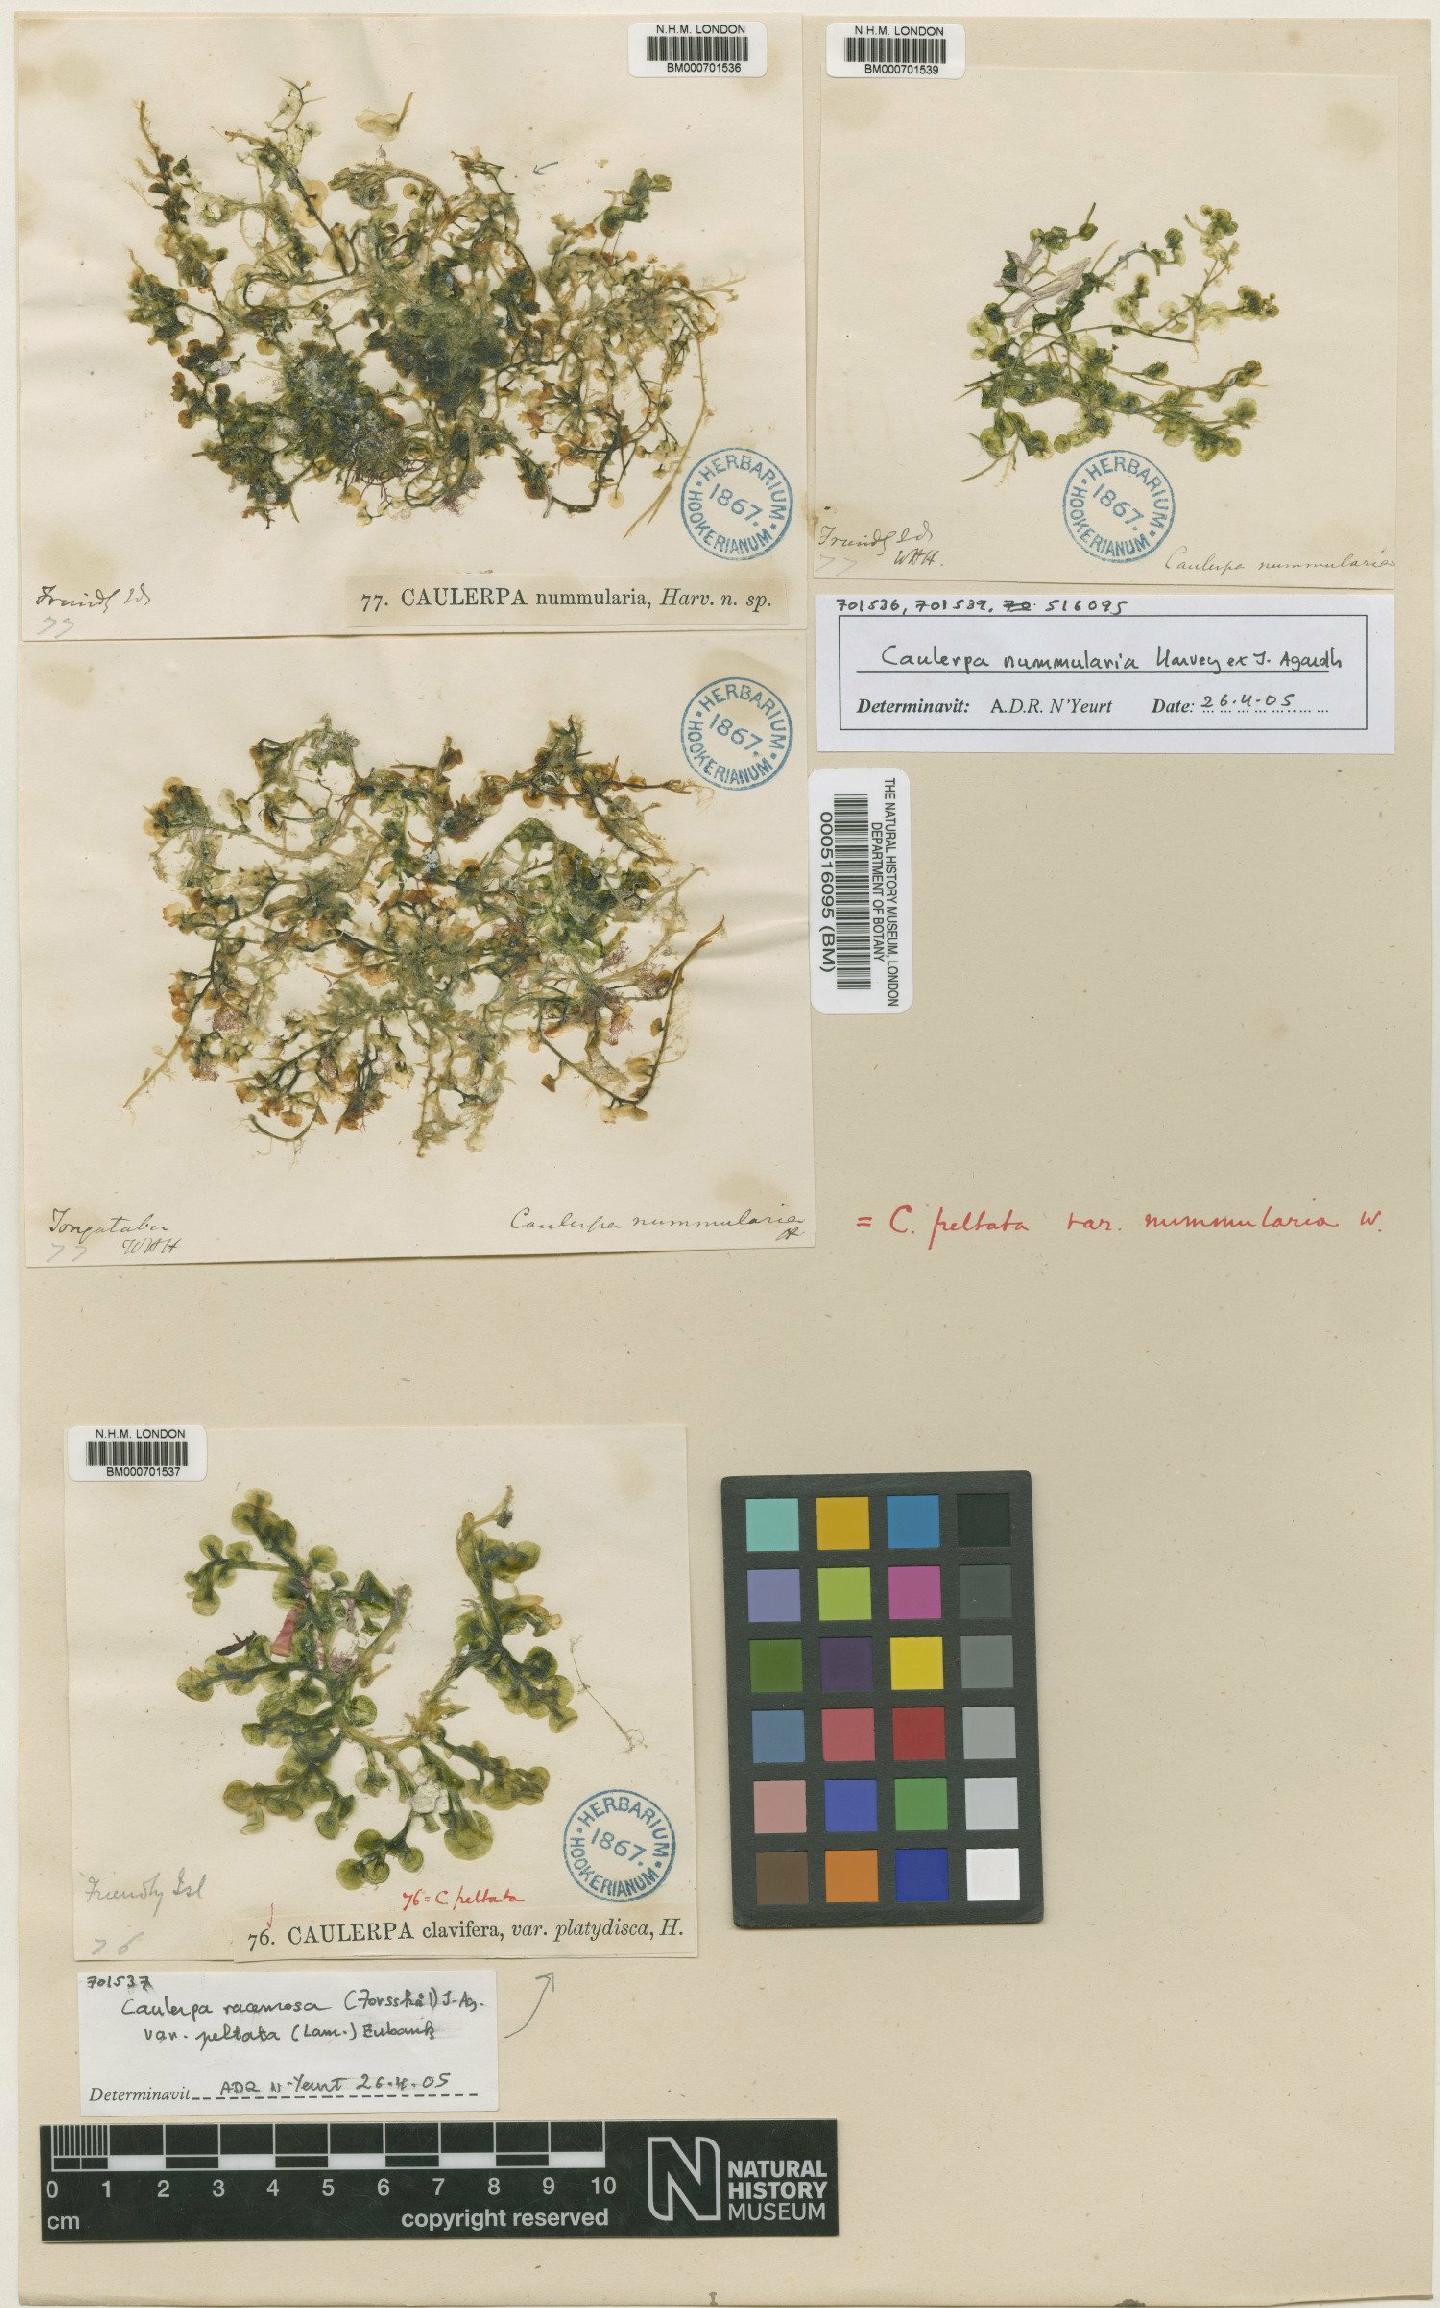 To NHMUK collection (Caulerpa nummularia Harv. & J.Agardh; Type; NHMUK:ecatalogue:4829959)